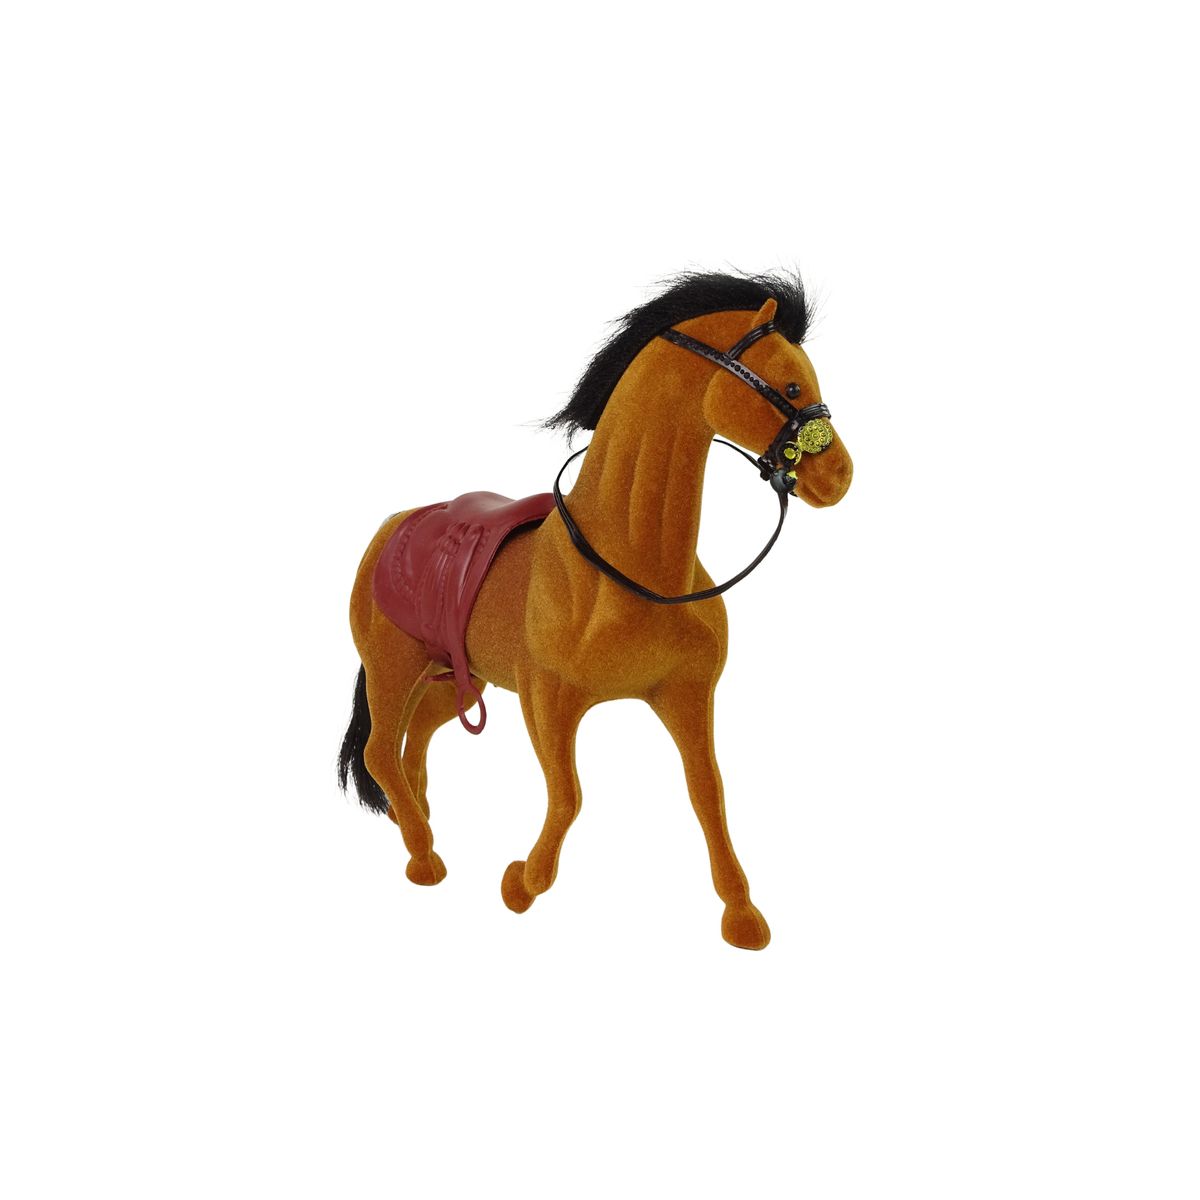 Figurka Lean koń brązowy 17cm (13377)